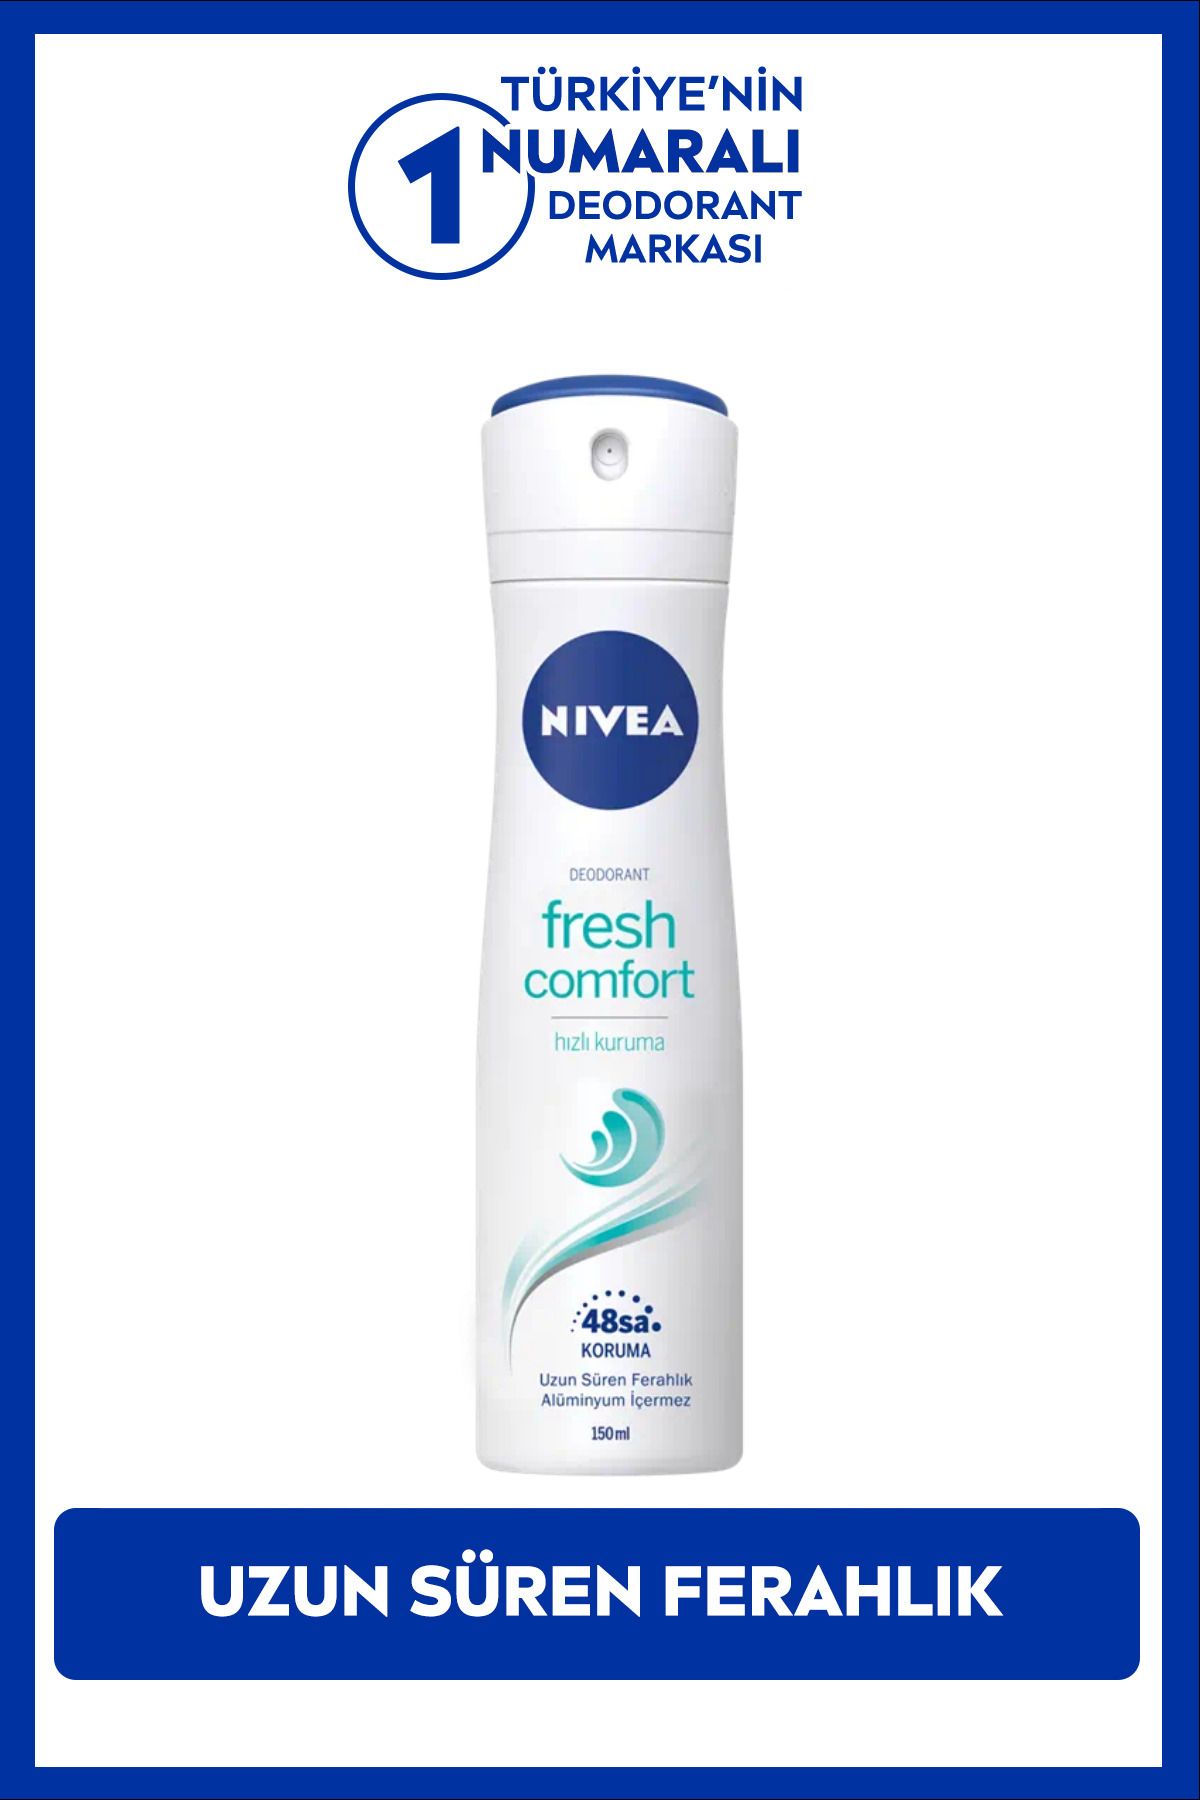 NIVEA Kadın Sprey Deodorant Fresh Comfort 150ml, Ter Kokusuna Karşı 48 Saat Koruma, Gün Boyu Ferahlık